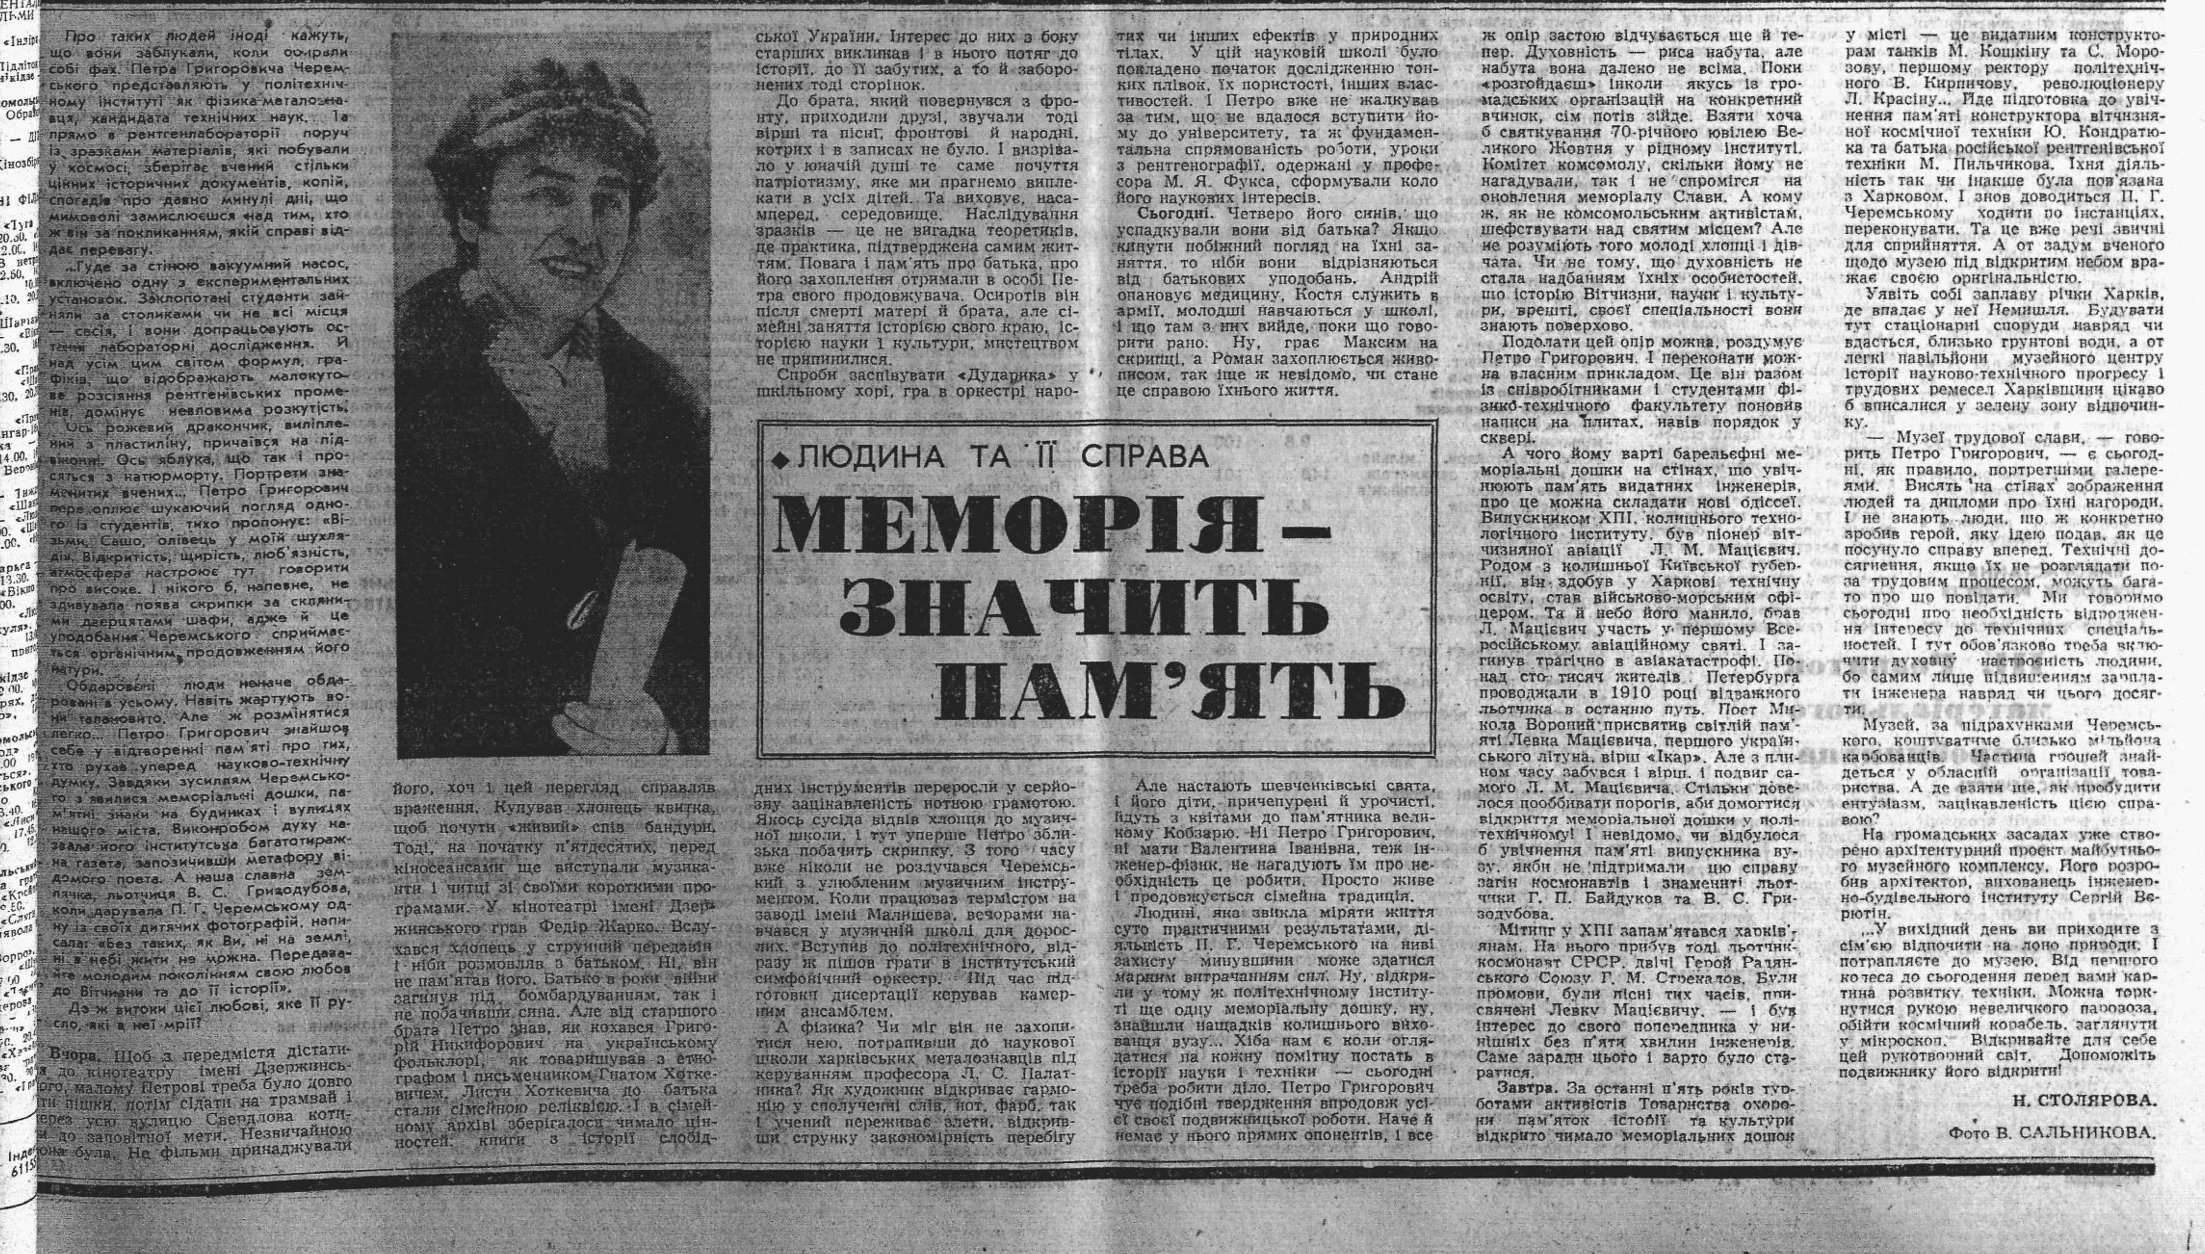 Меморія — значить пам’ять ("Соціалістична Харківщина", 31.01.1988)